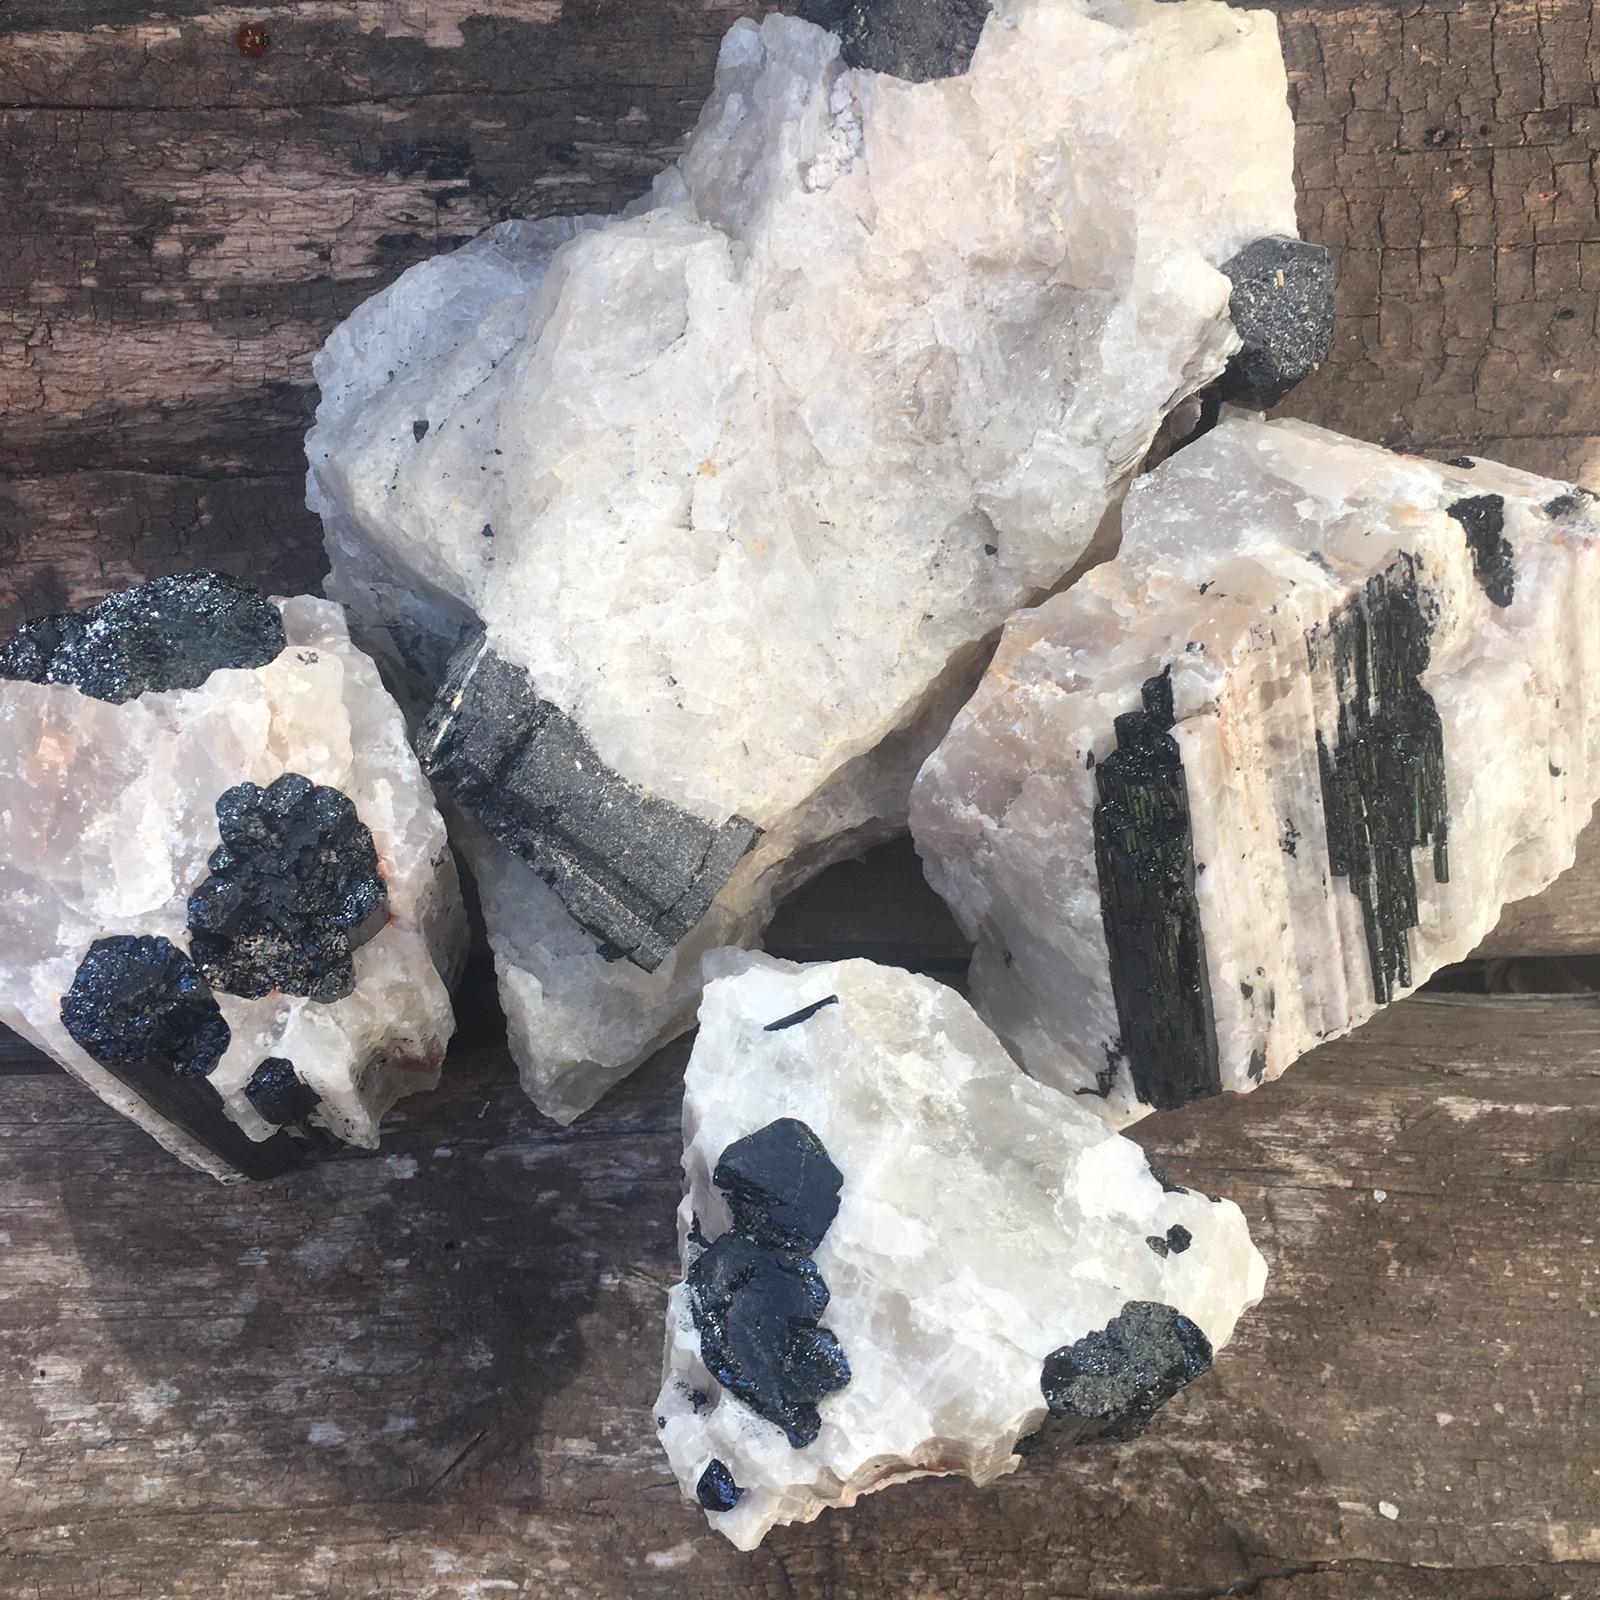 Stones from Uruguay - Black Tourmaline in Quartz Matrix - Black Tourmaline on a Quartz Matrix